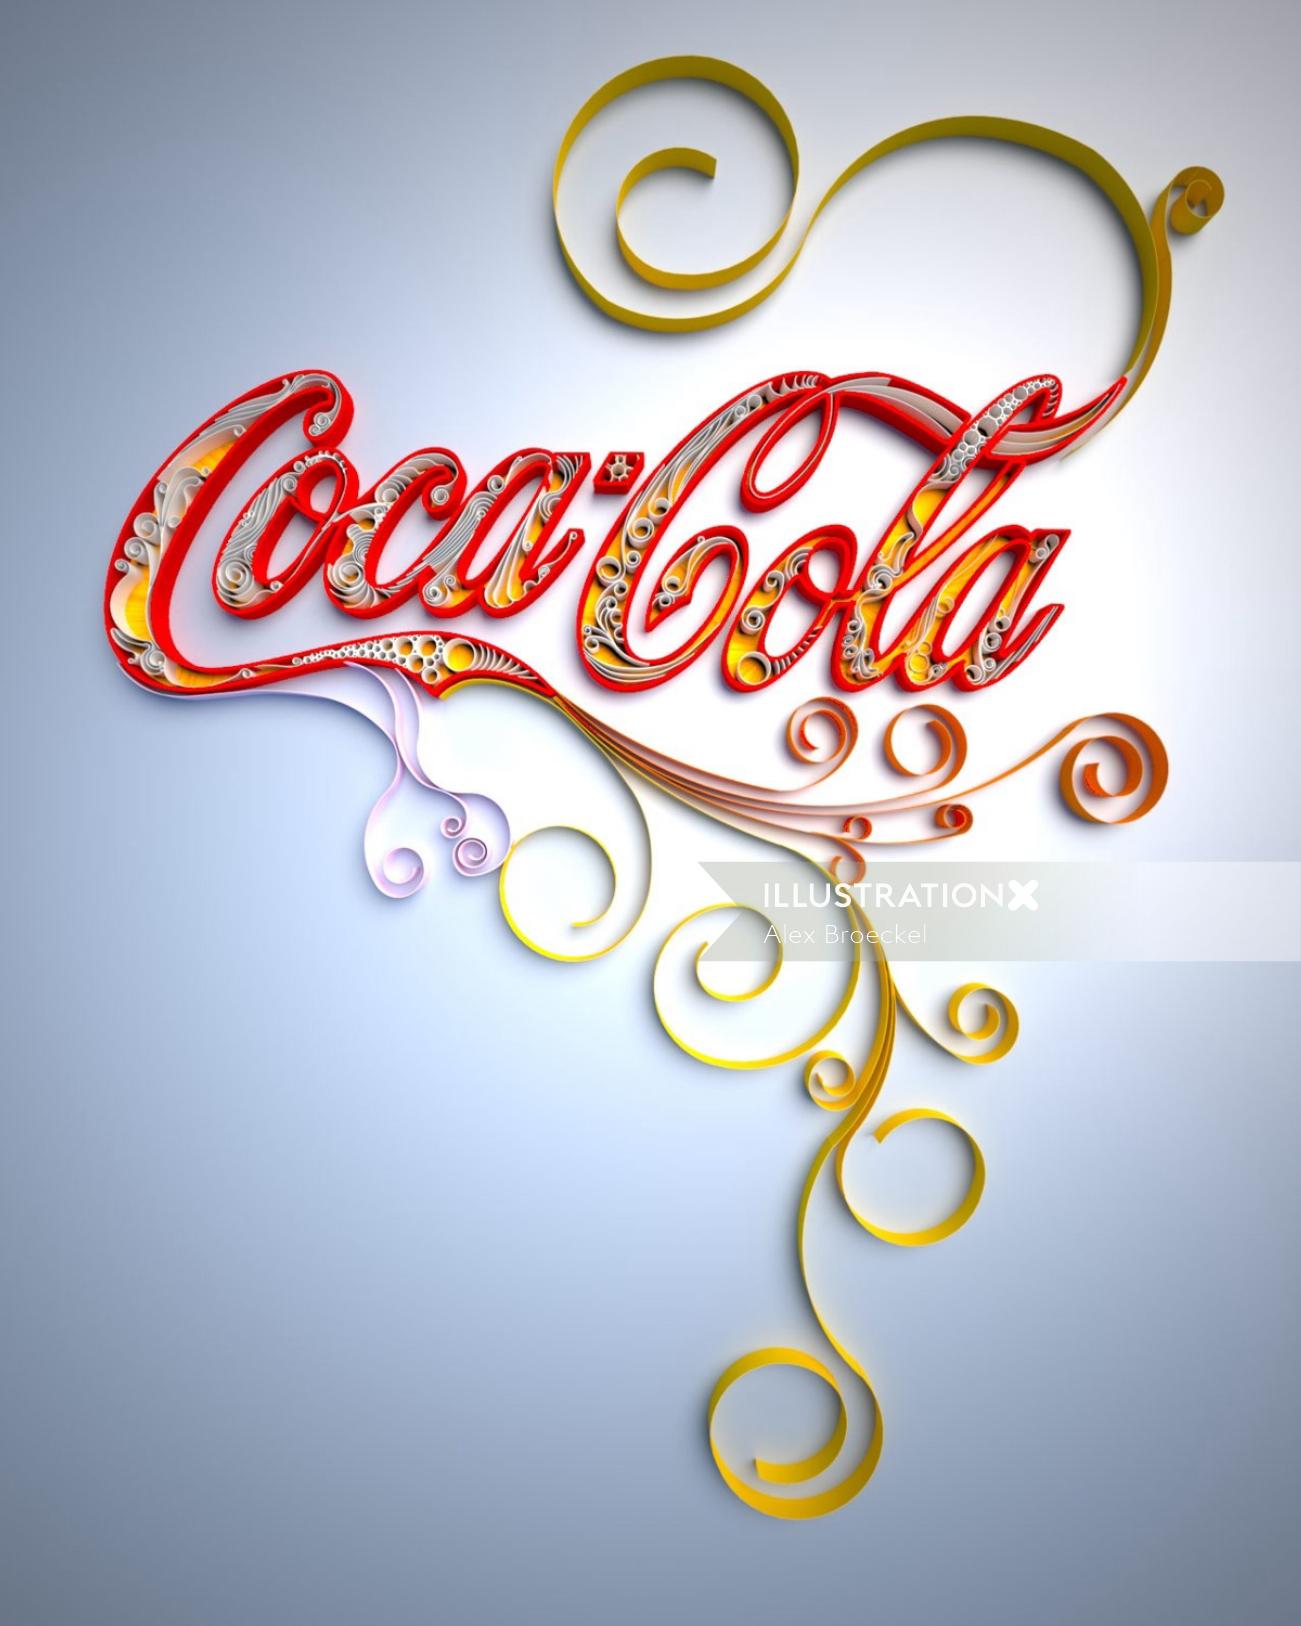 Diseño de letras de Coca-Cola